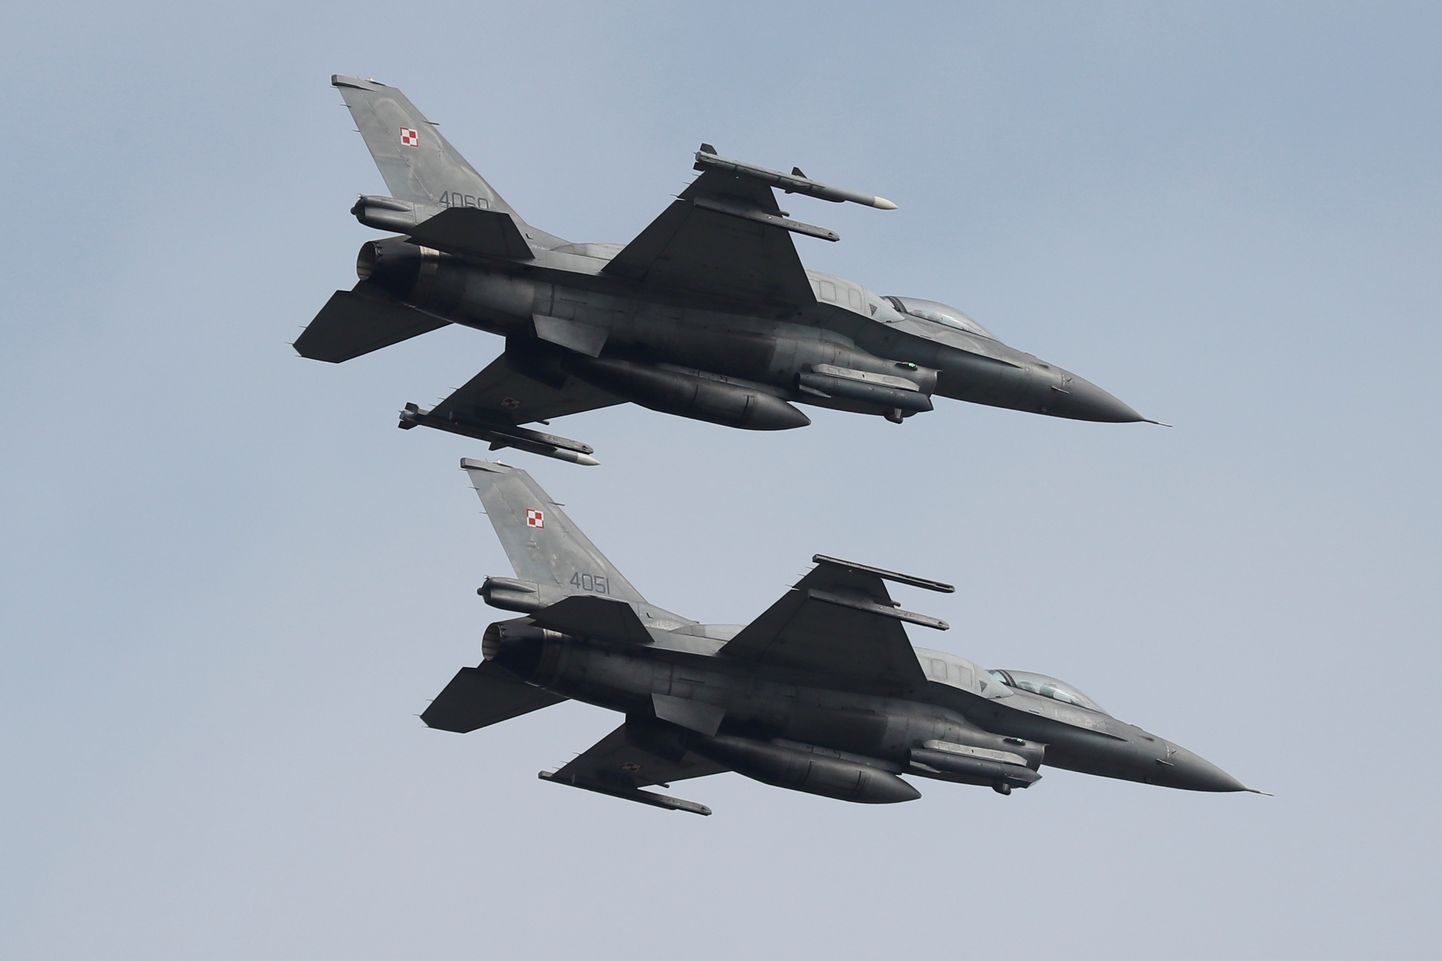 Hävituslennukid F-16 lendamas sõjaõppusel Clear Sky 2018. Pildilolevad lennukid kuuluvad Poola õhuväele.